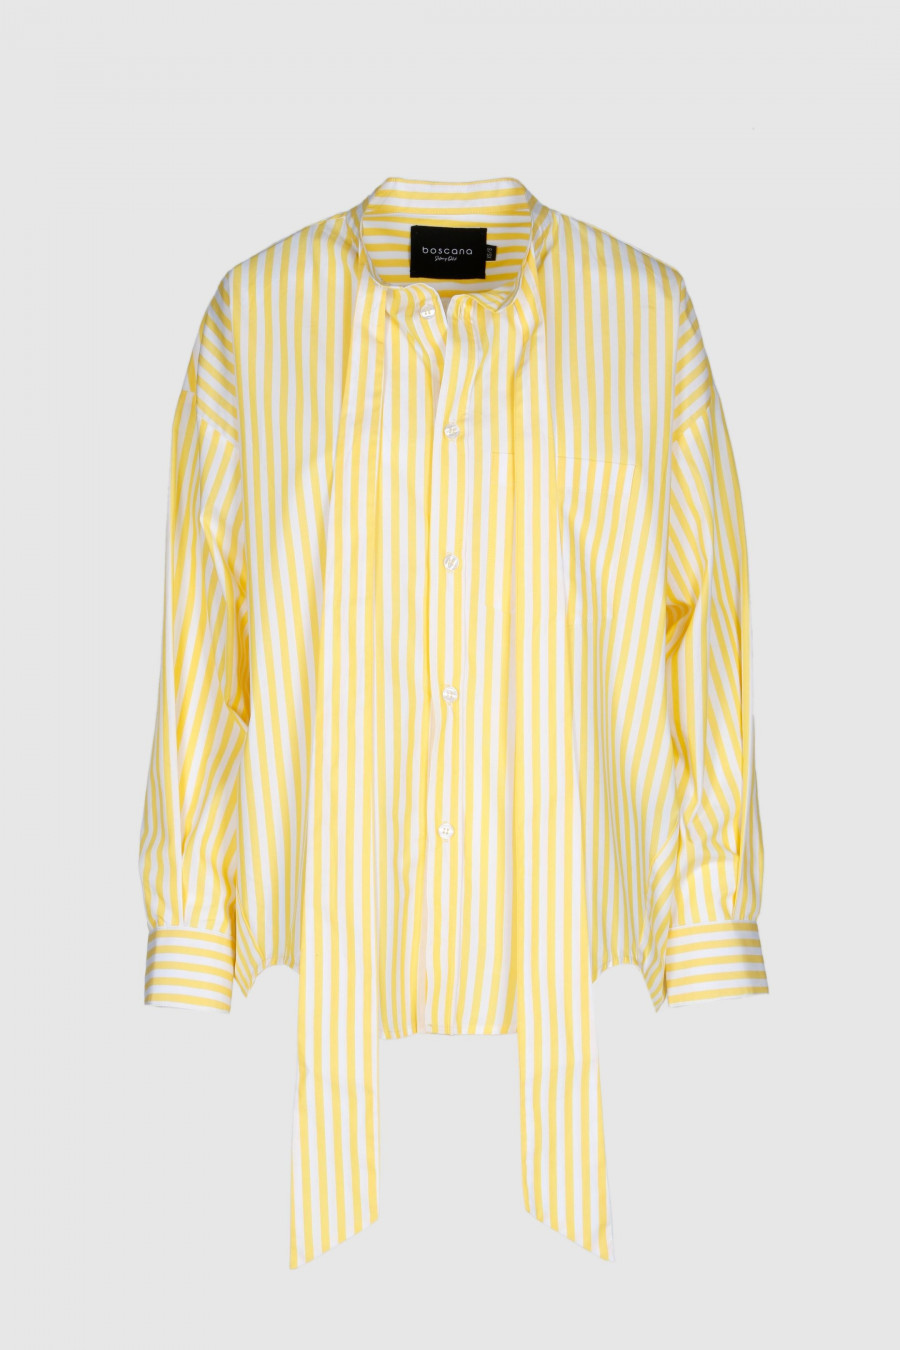 Bluse, Oversize, weit geschnitten, Baumwolle, gelb weis gestreift , Stehkragen, aufgesetzte Brusttaschen